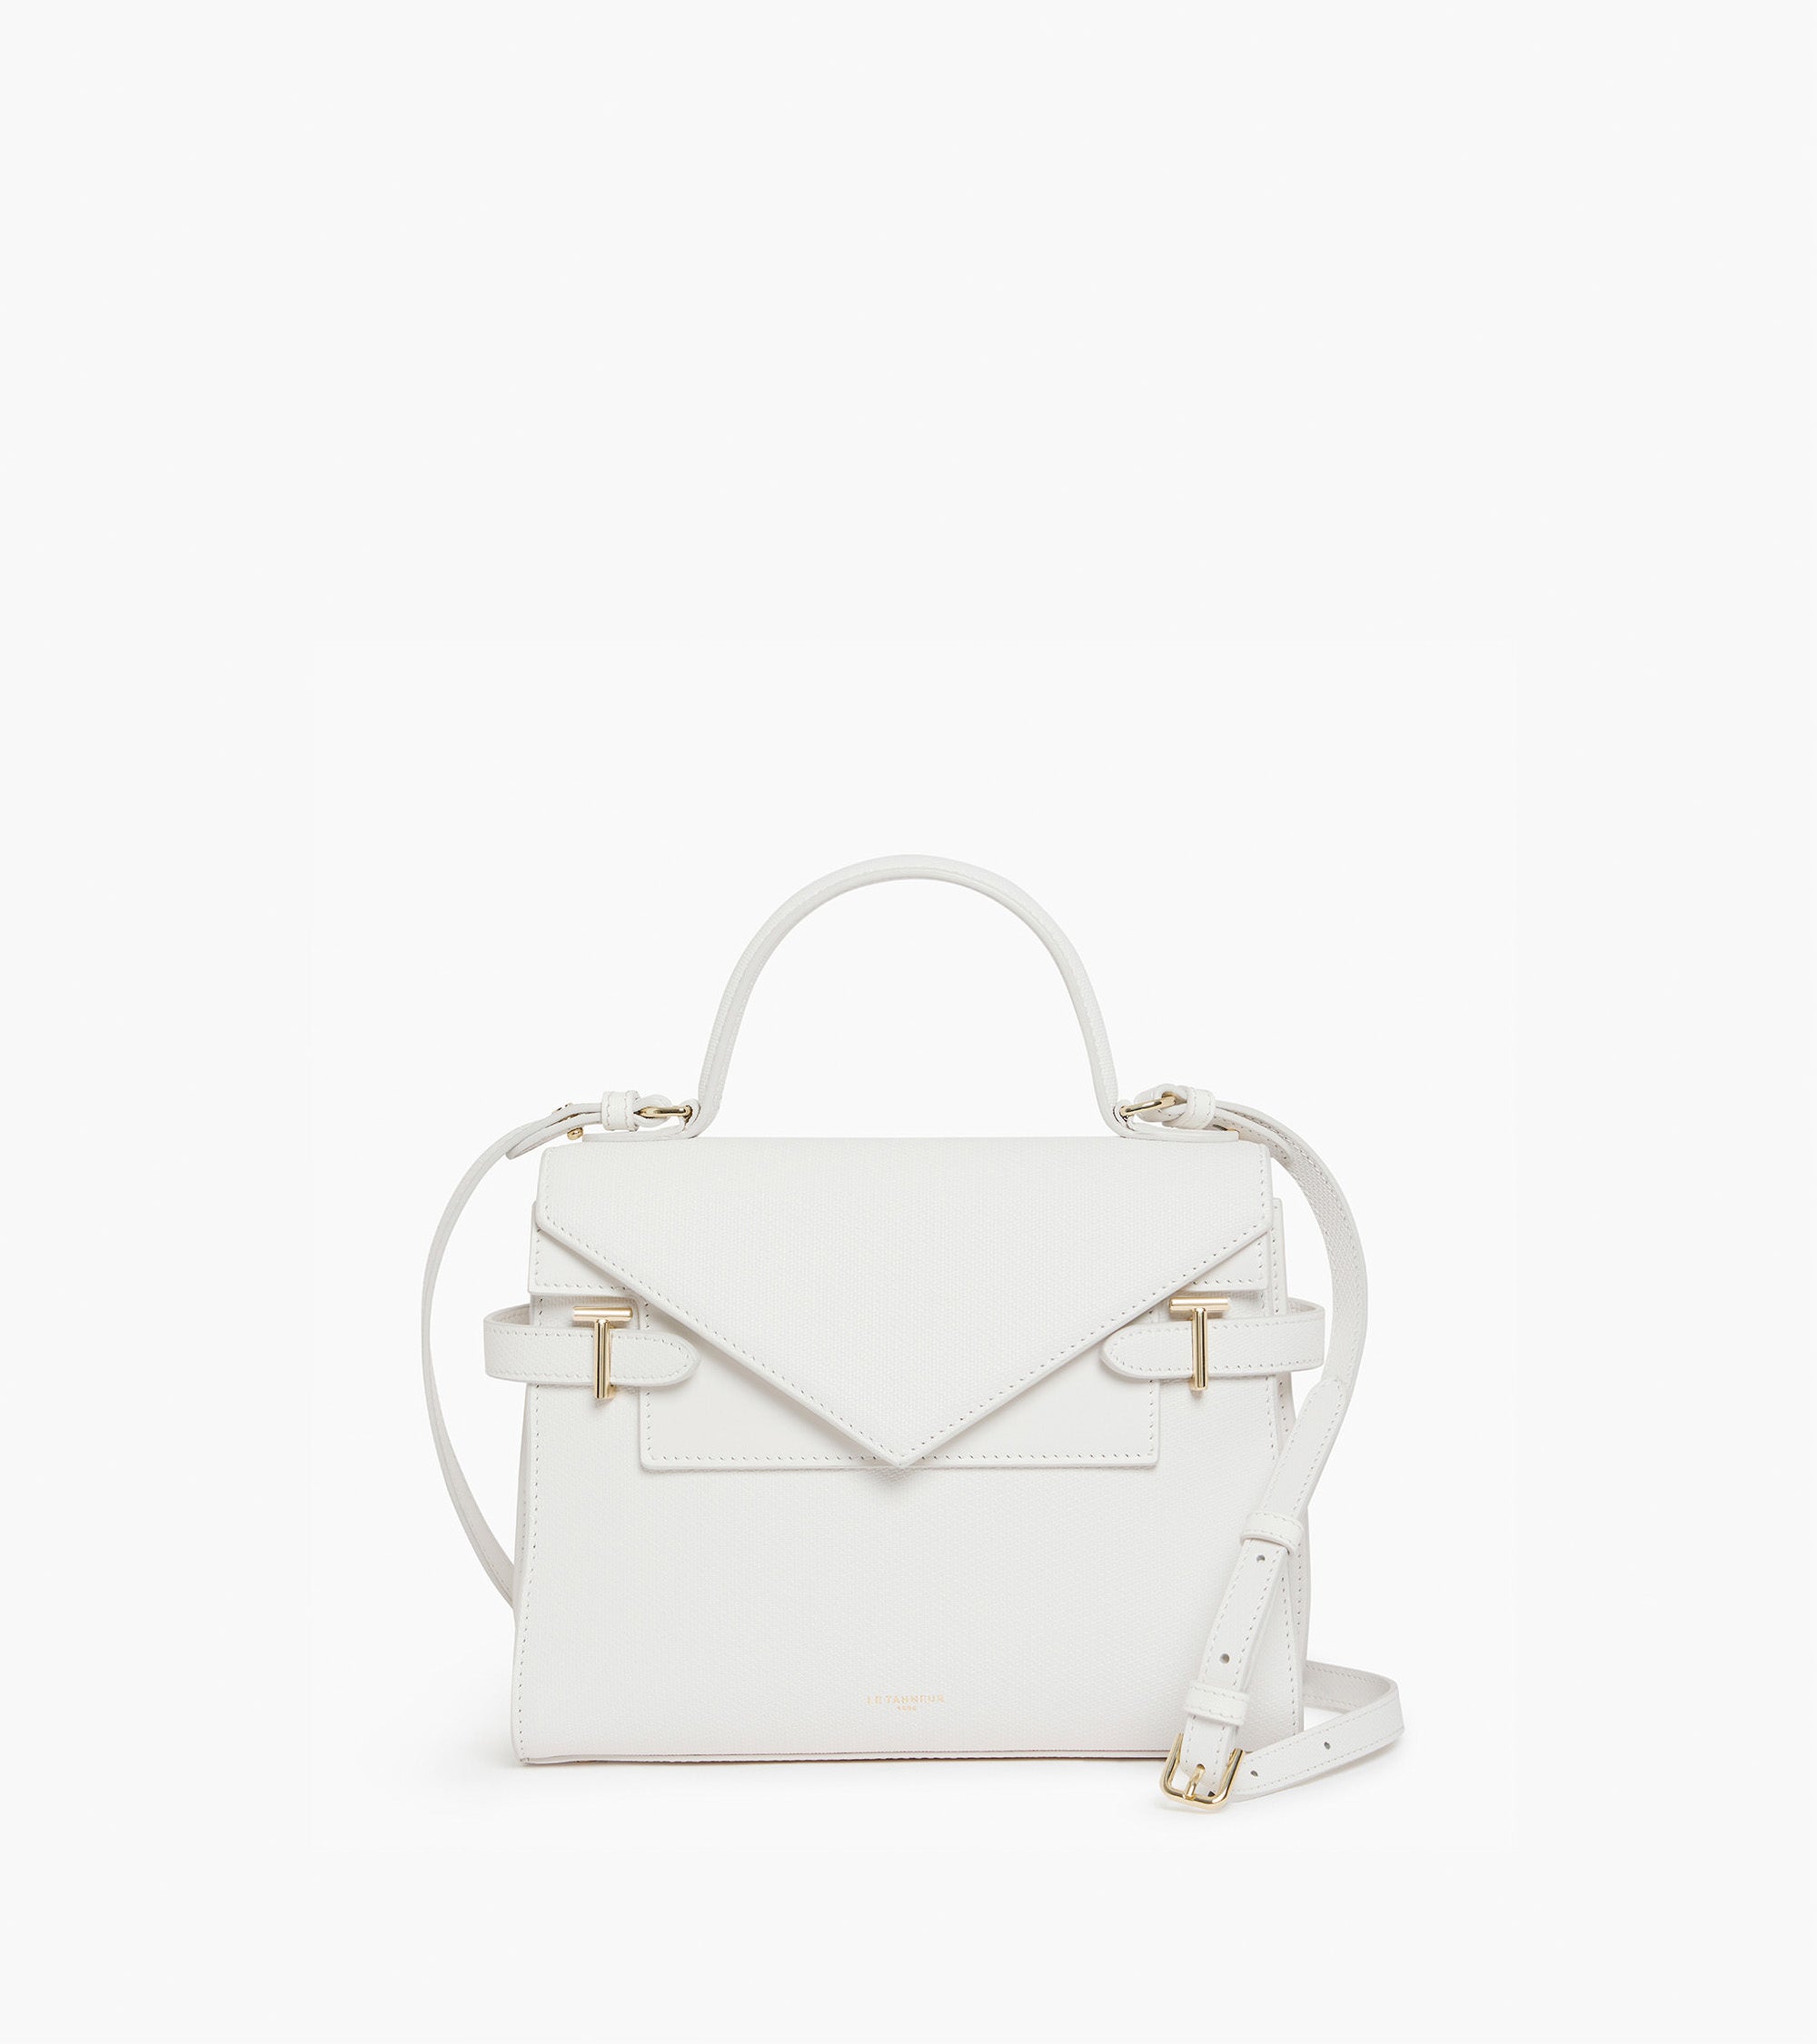 Emilie medium double flap handbag model in T signature leather